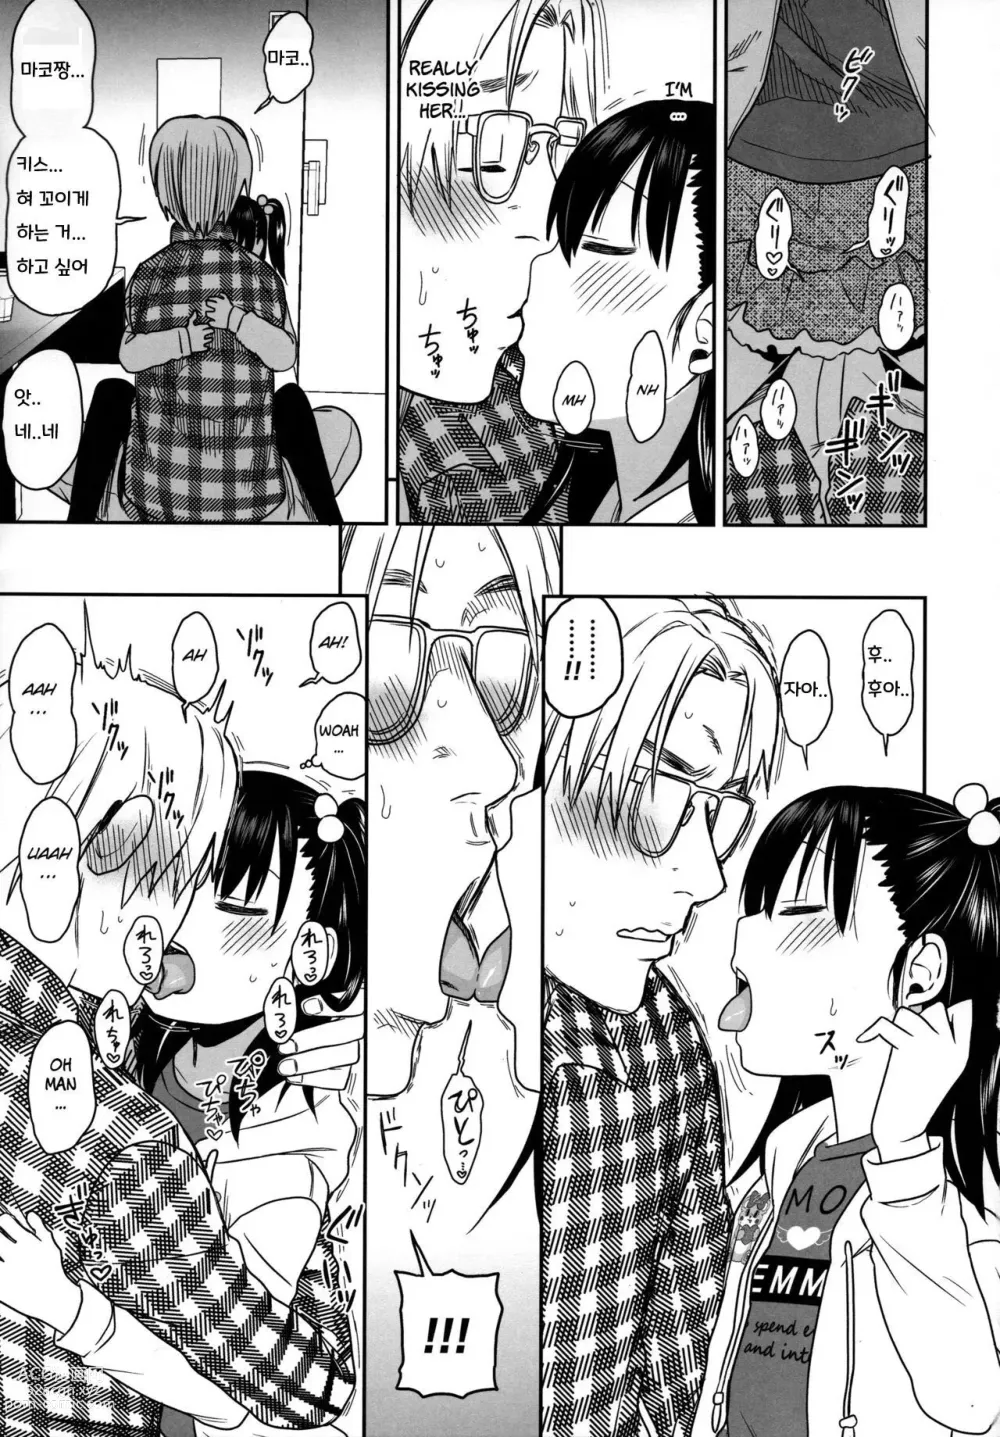 Page 19 of doujinshi Tonari no Mako-chan Season 2 Vol. 2